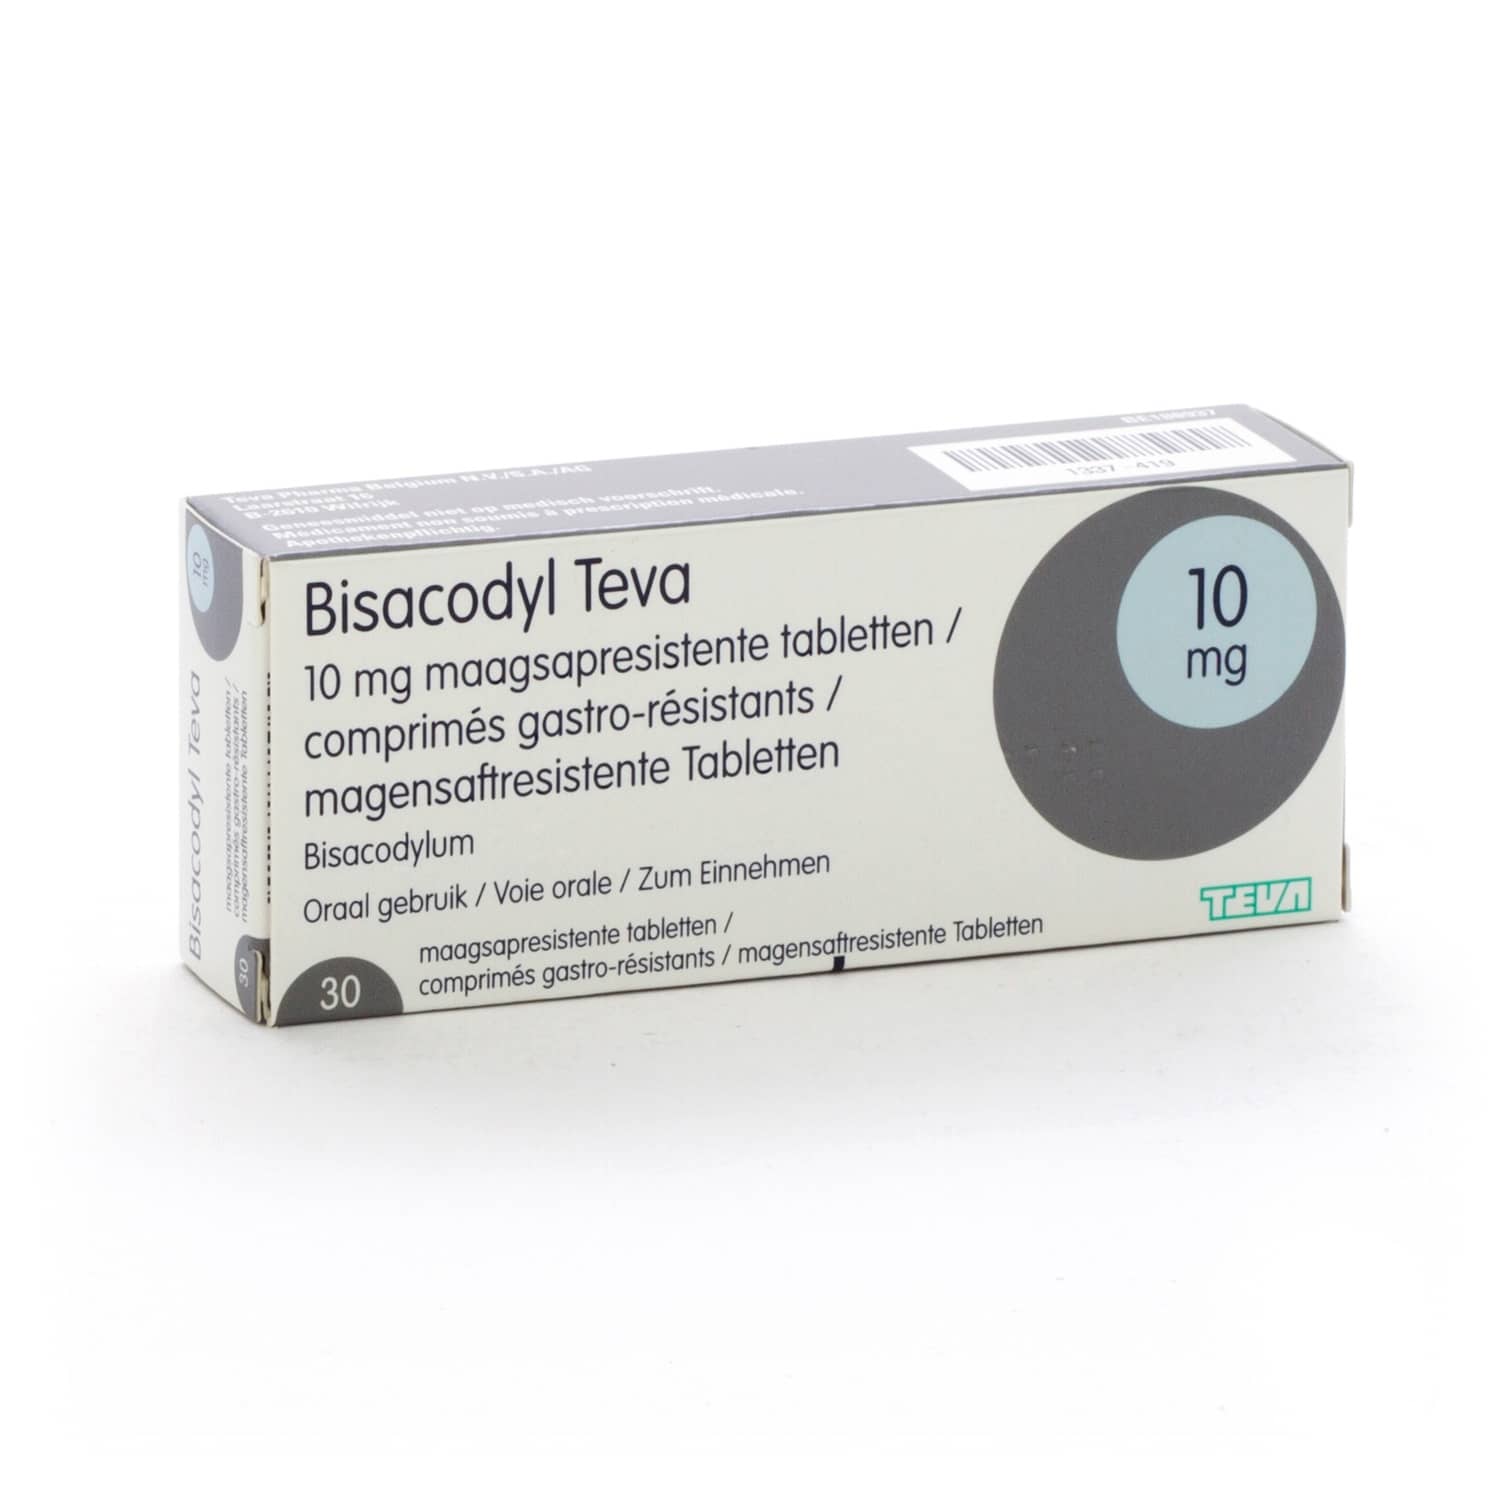 Bisacodyl Teva 10 mg